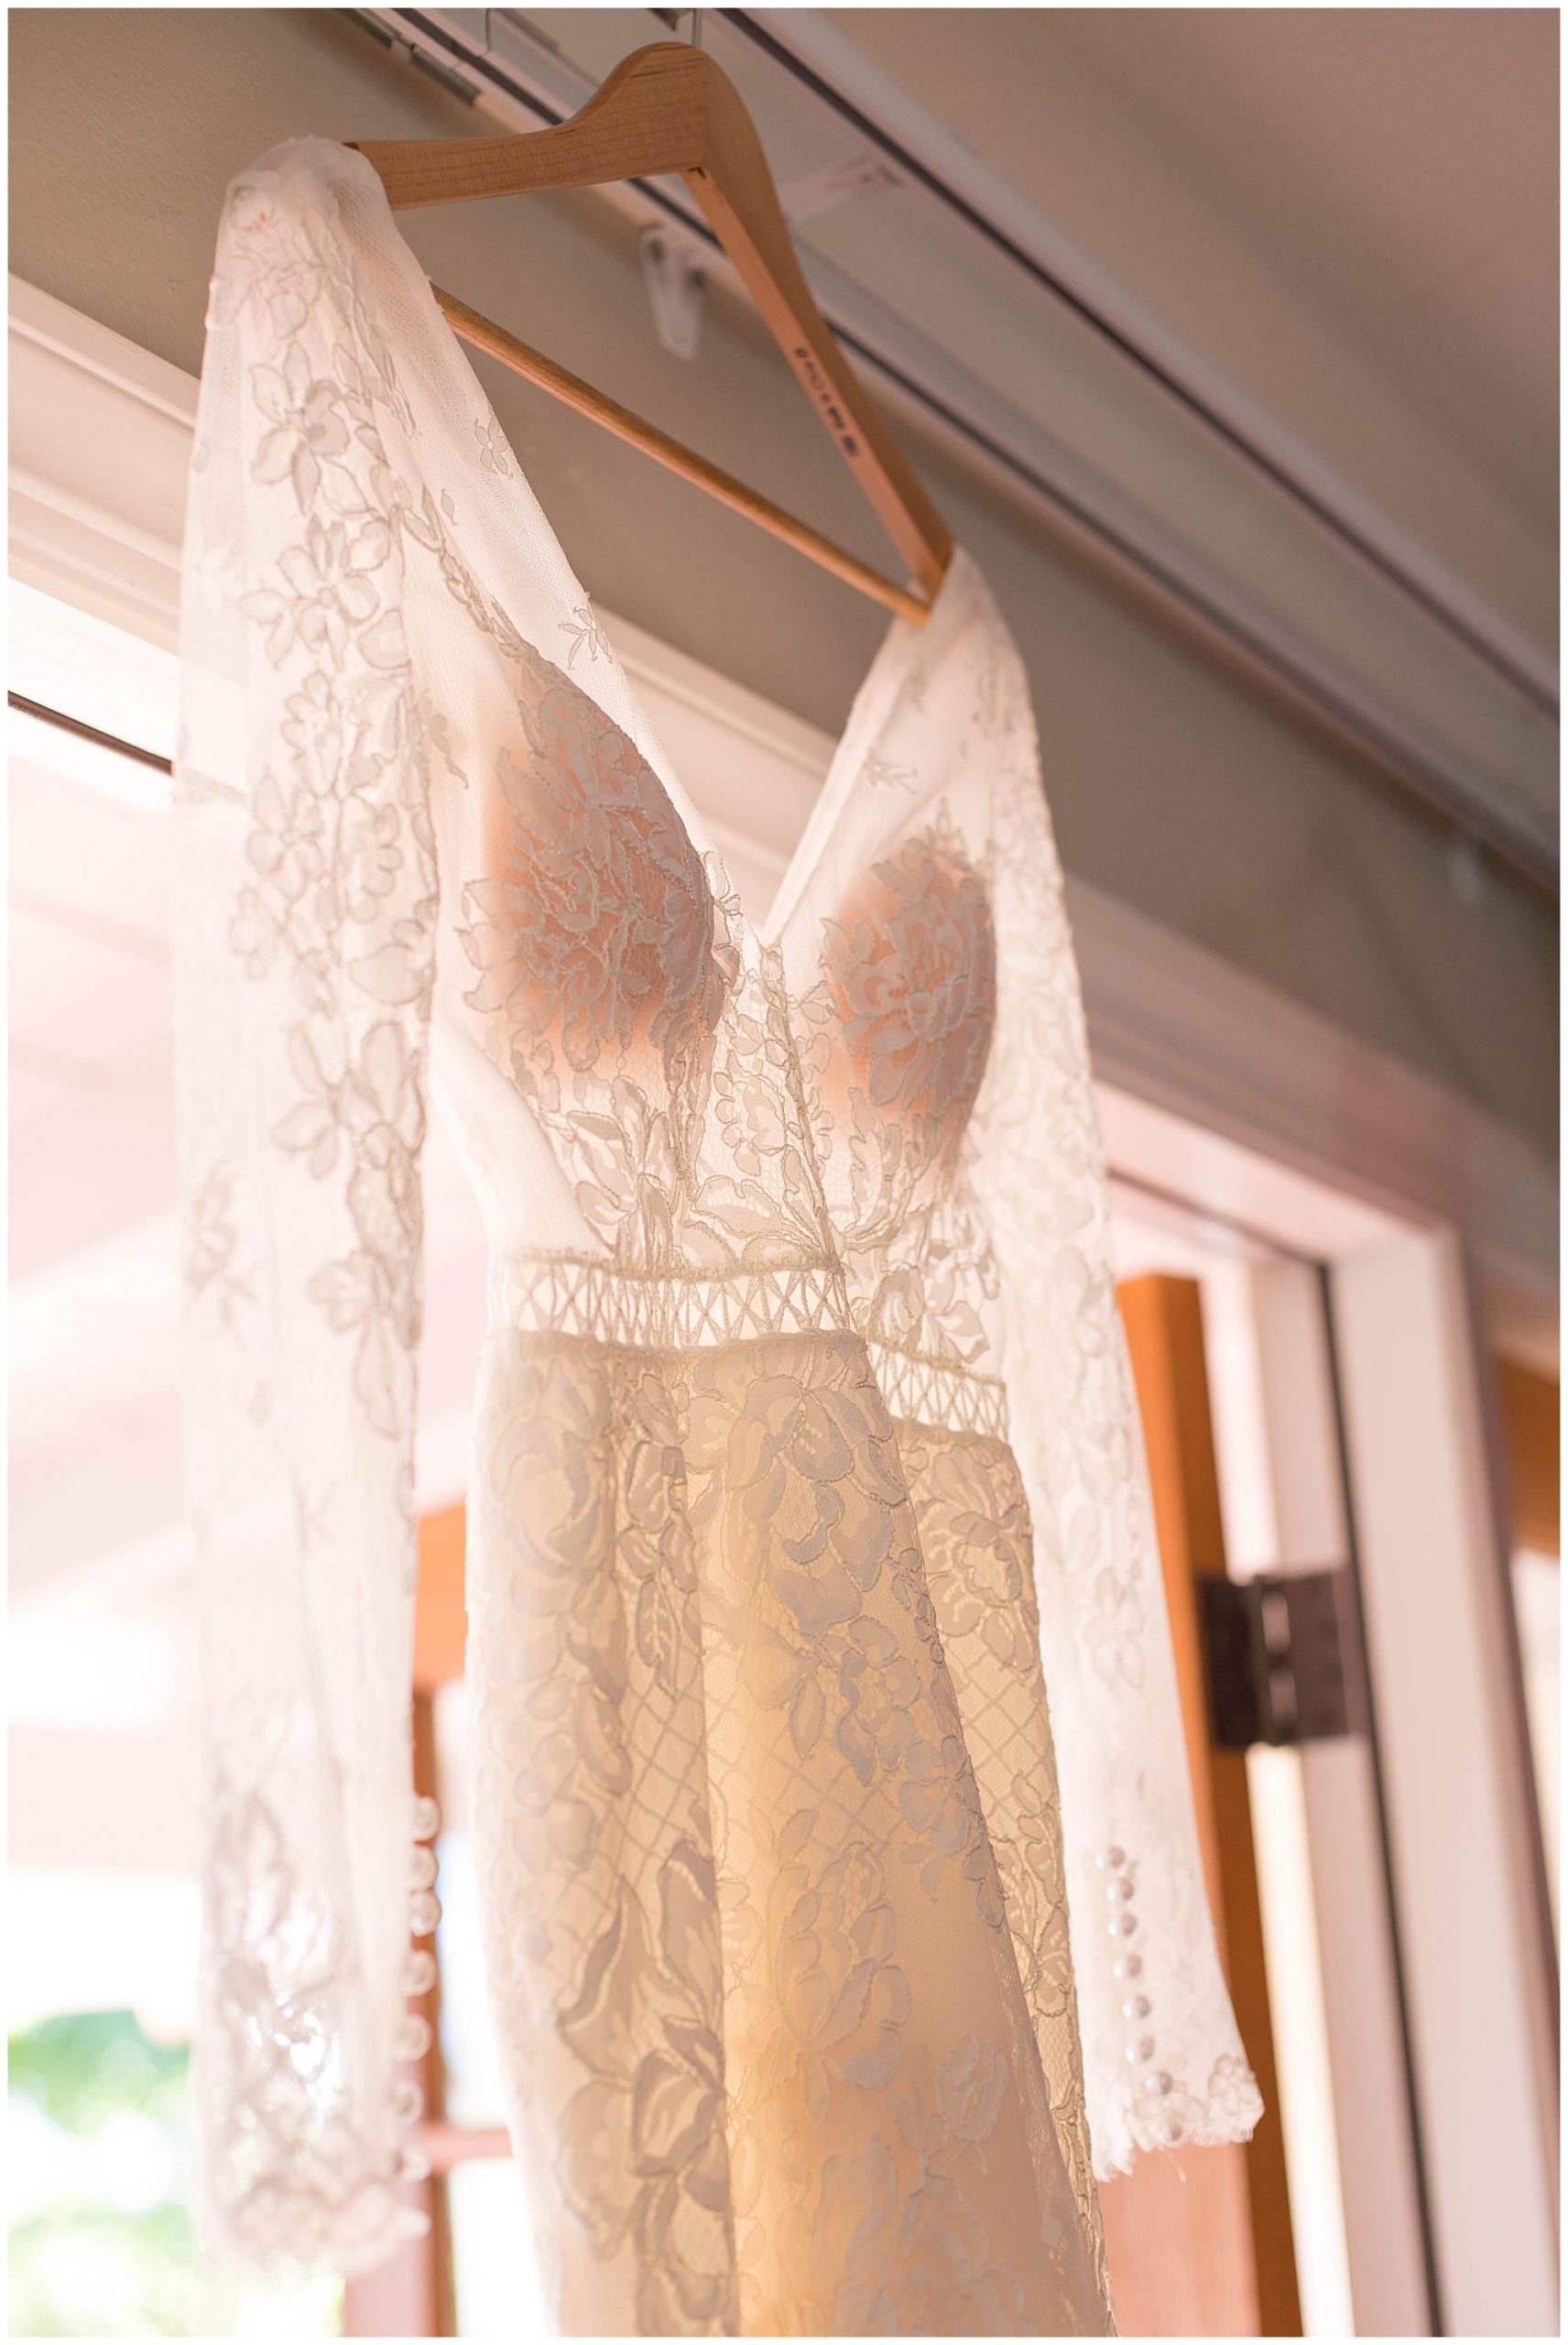 long sleeve lace wedding dress hanging in door